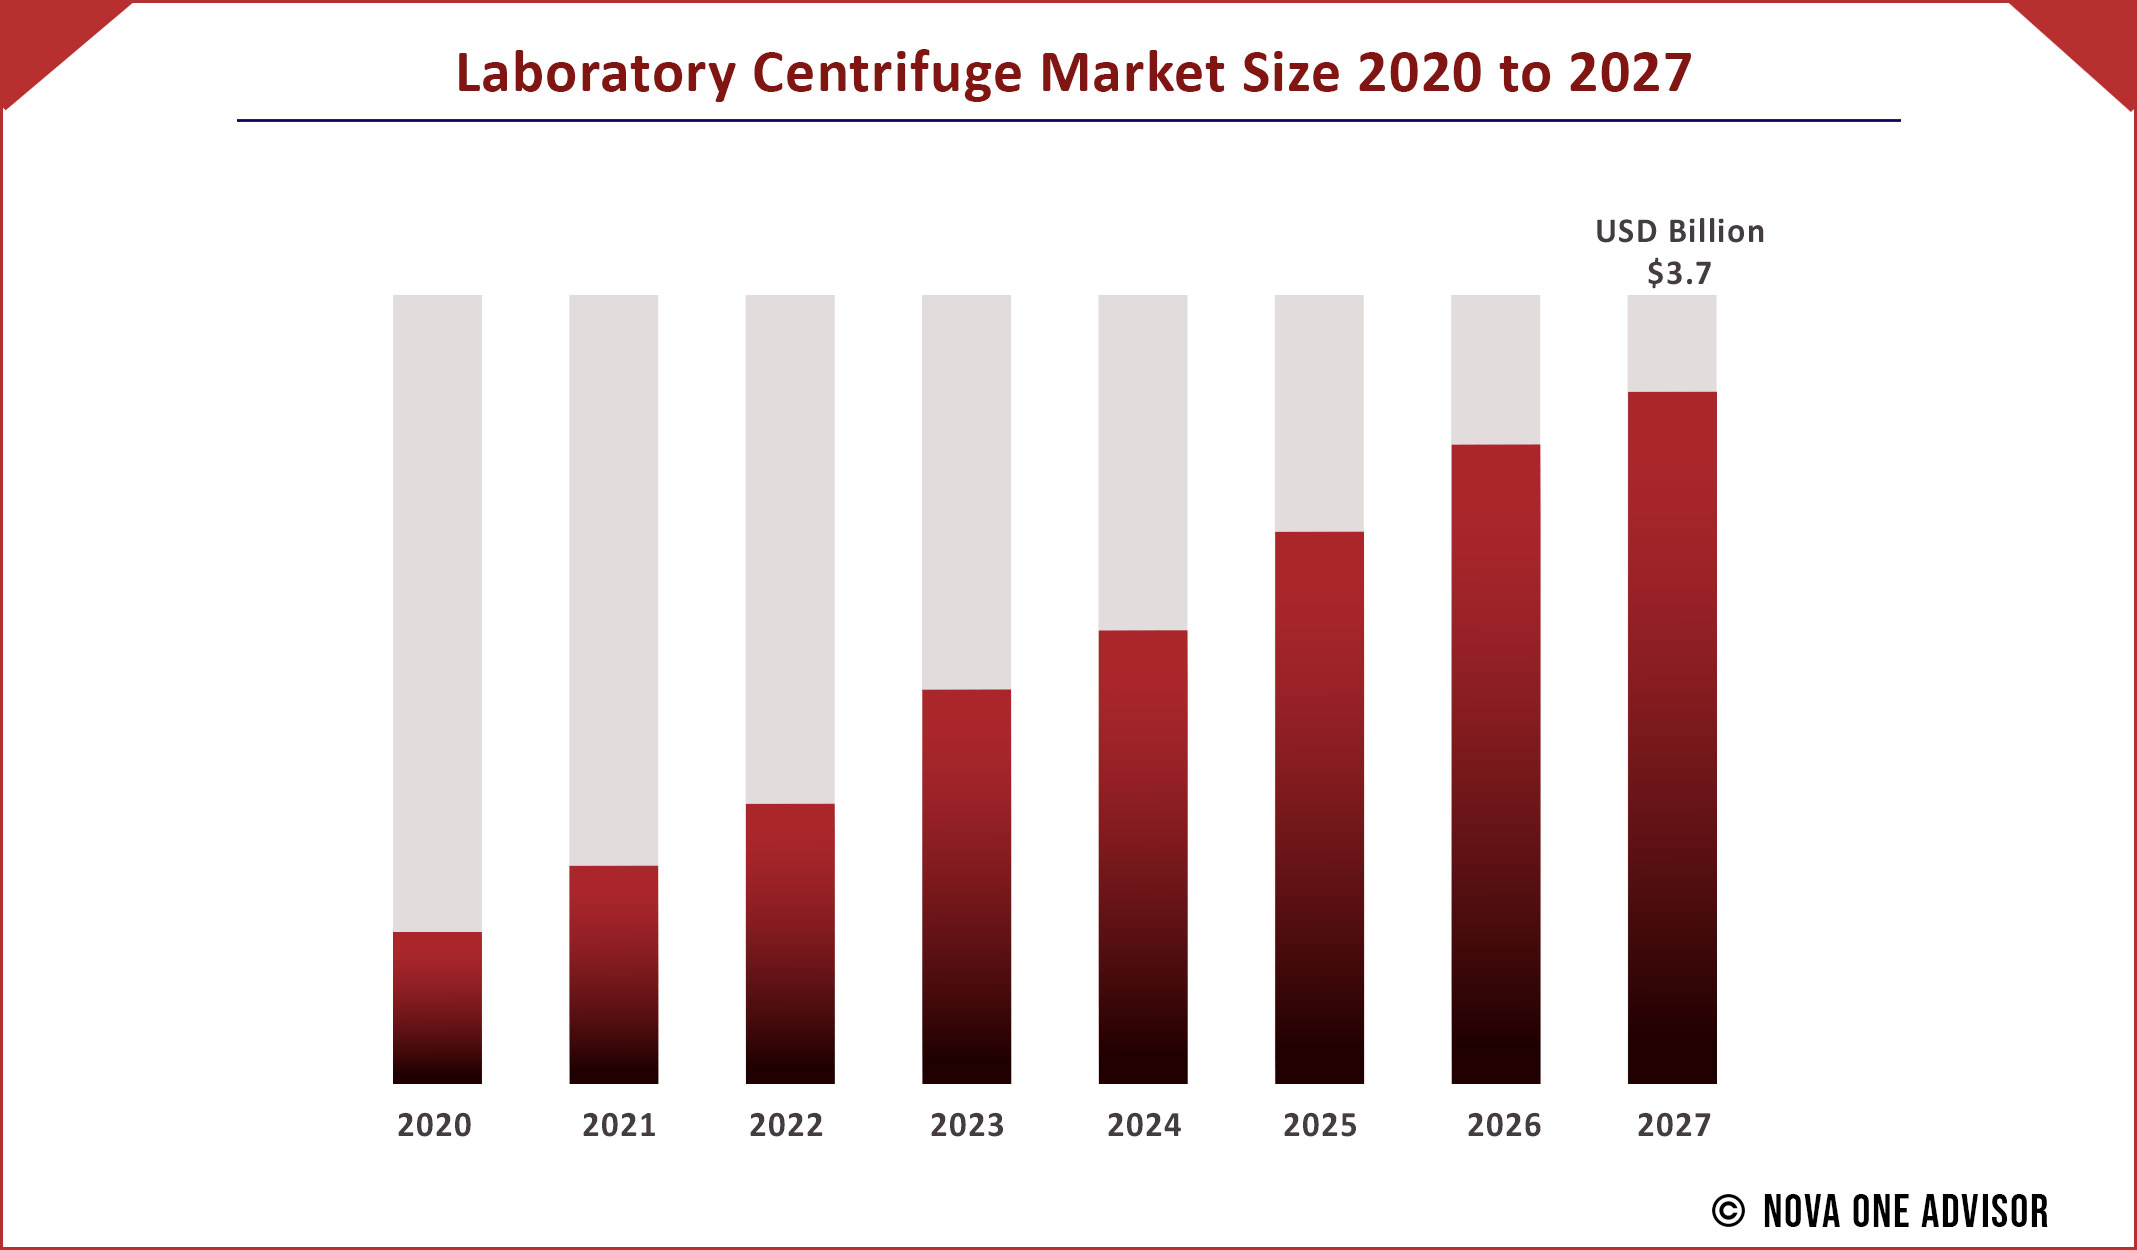 Laboratory Centrifuge Market Size 2020 to 2027